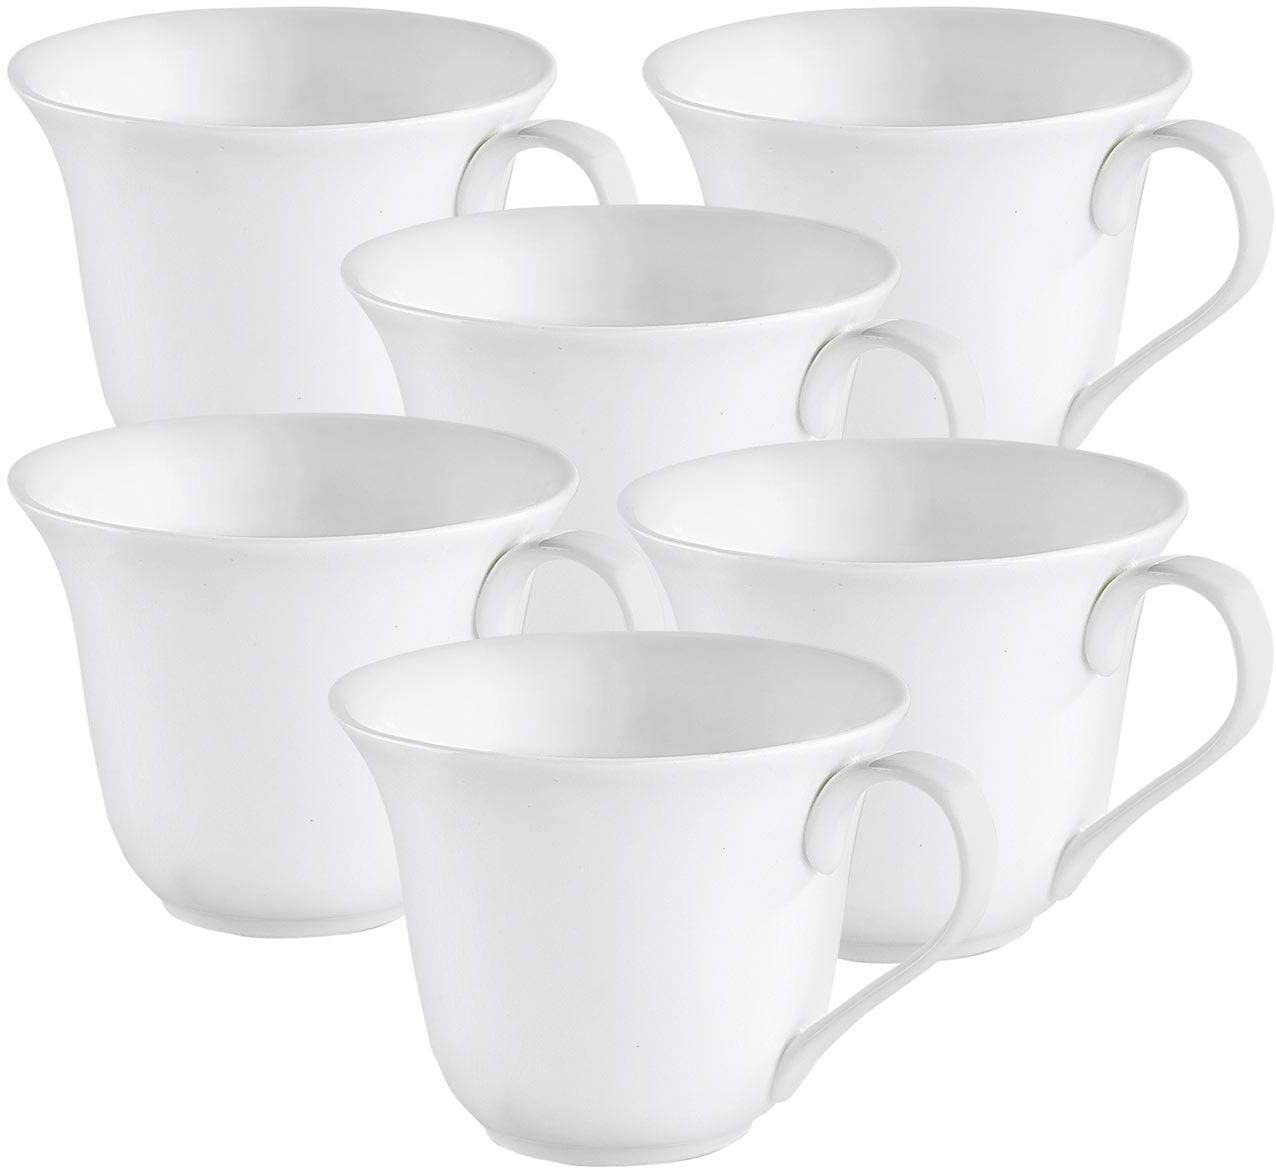 ROSENSTEIN & SOHNE Rosenstein & Söhne Heart-shaped mugs: set of 6 porcelain mugs in heart shape (ceramic tea cup)